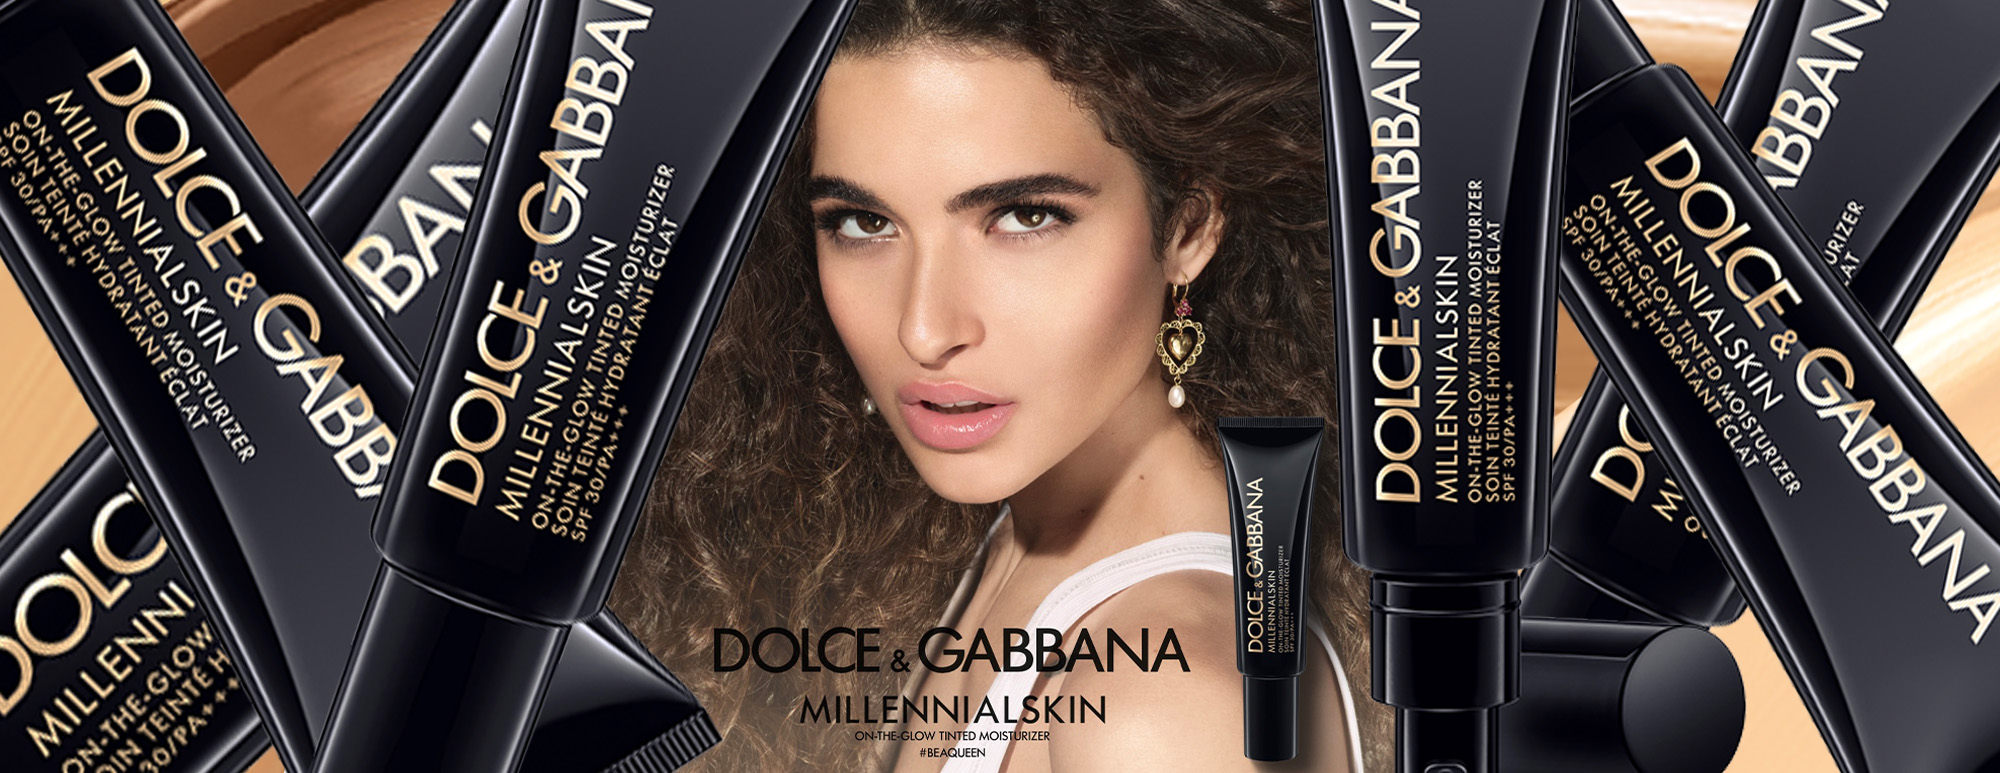 Dolce gabbana millennialskin. Dolce Gabbana Millennial Skin. Dolce Gabbana Millennialskin свотчи. Тон Dolce Gabbana Millenialskin свотчи.